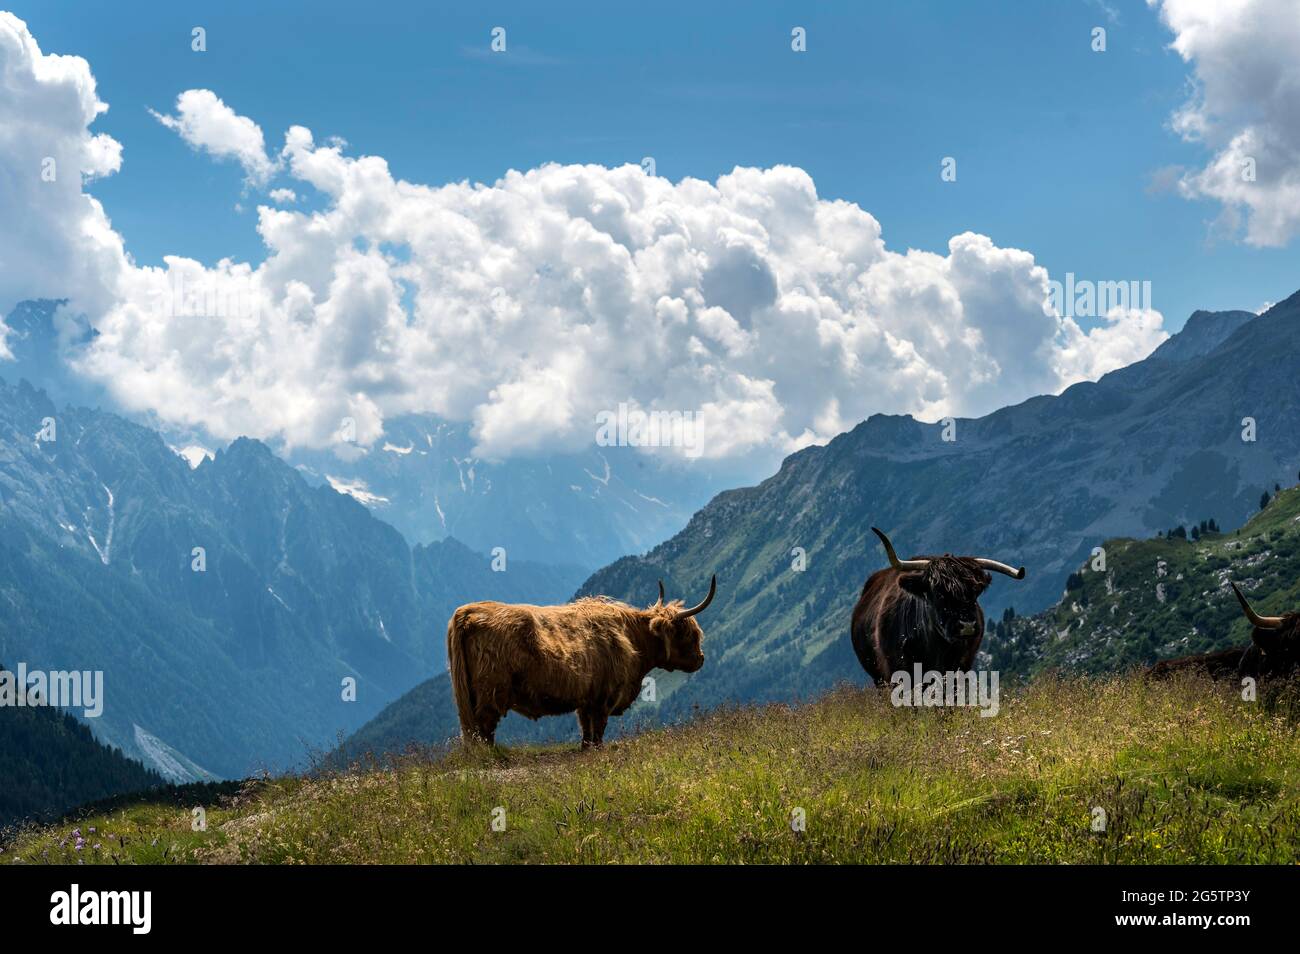 Schottisches Hochlandrind (Highland cattle) bei Blaunca über dem Silsersee in  der Gem. Sils im Engadin/Segl, am 20.07.19. Stock Photo